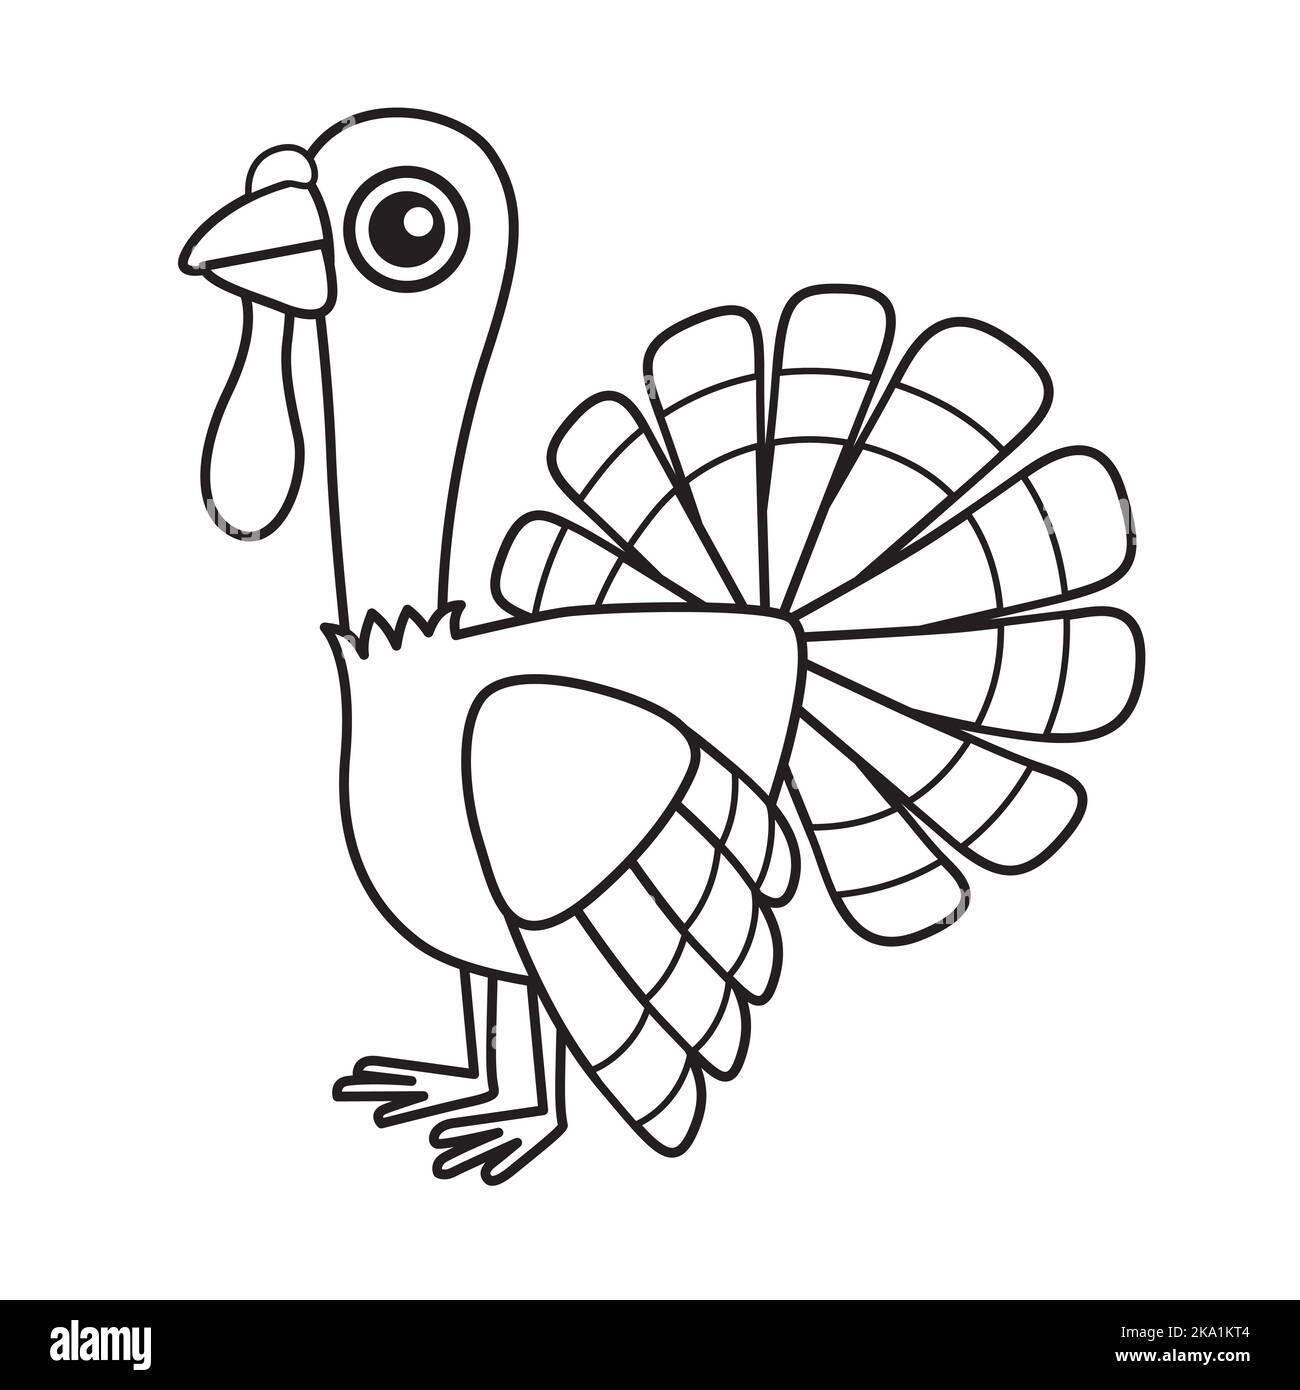 Thanksgiving Türkei Fest Isoliert Malvorlagen Stock Vektorgrafik ...